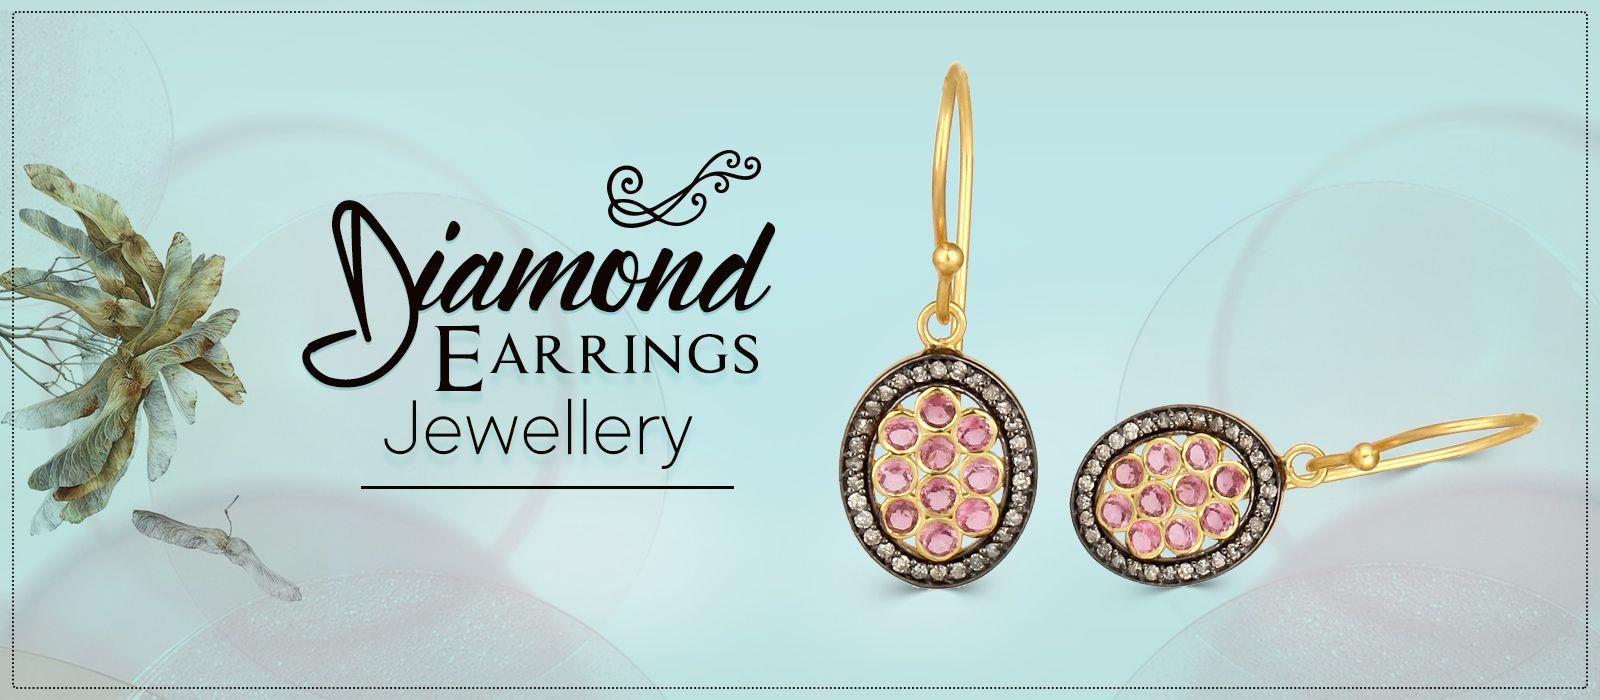 Wholesale diamond earrings jewelry